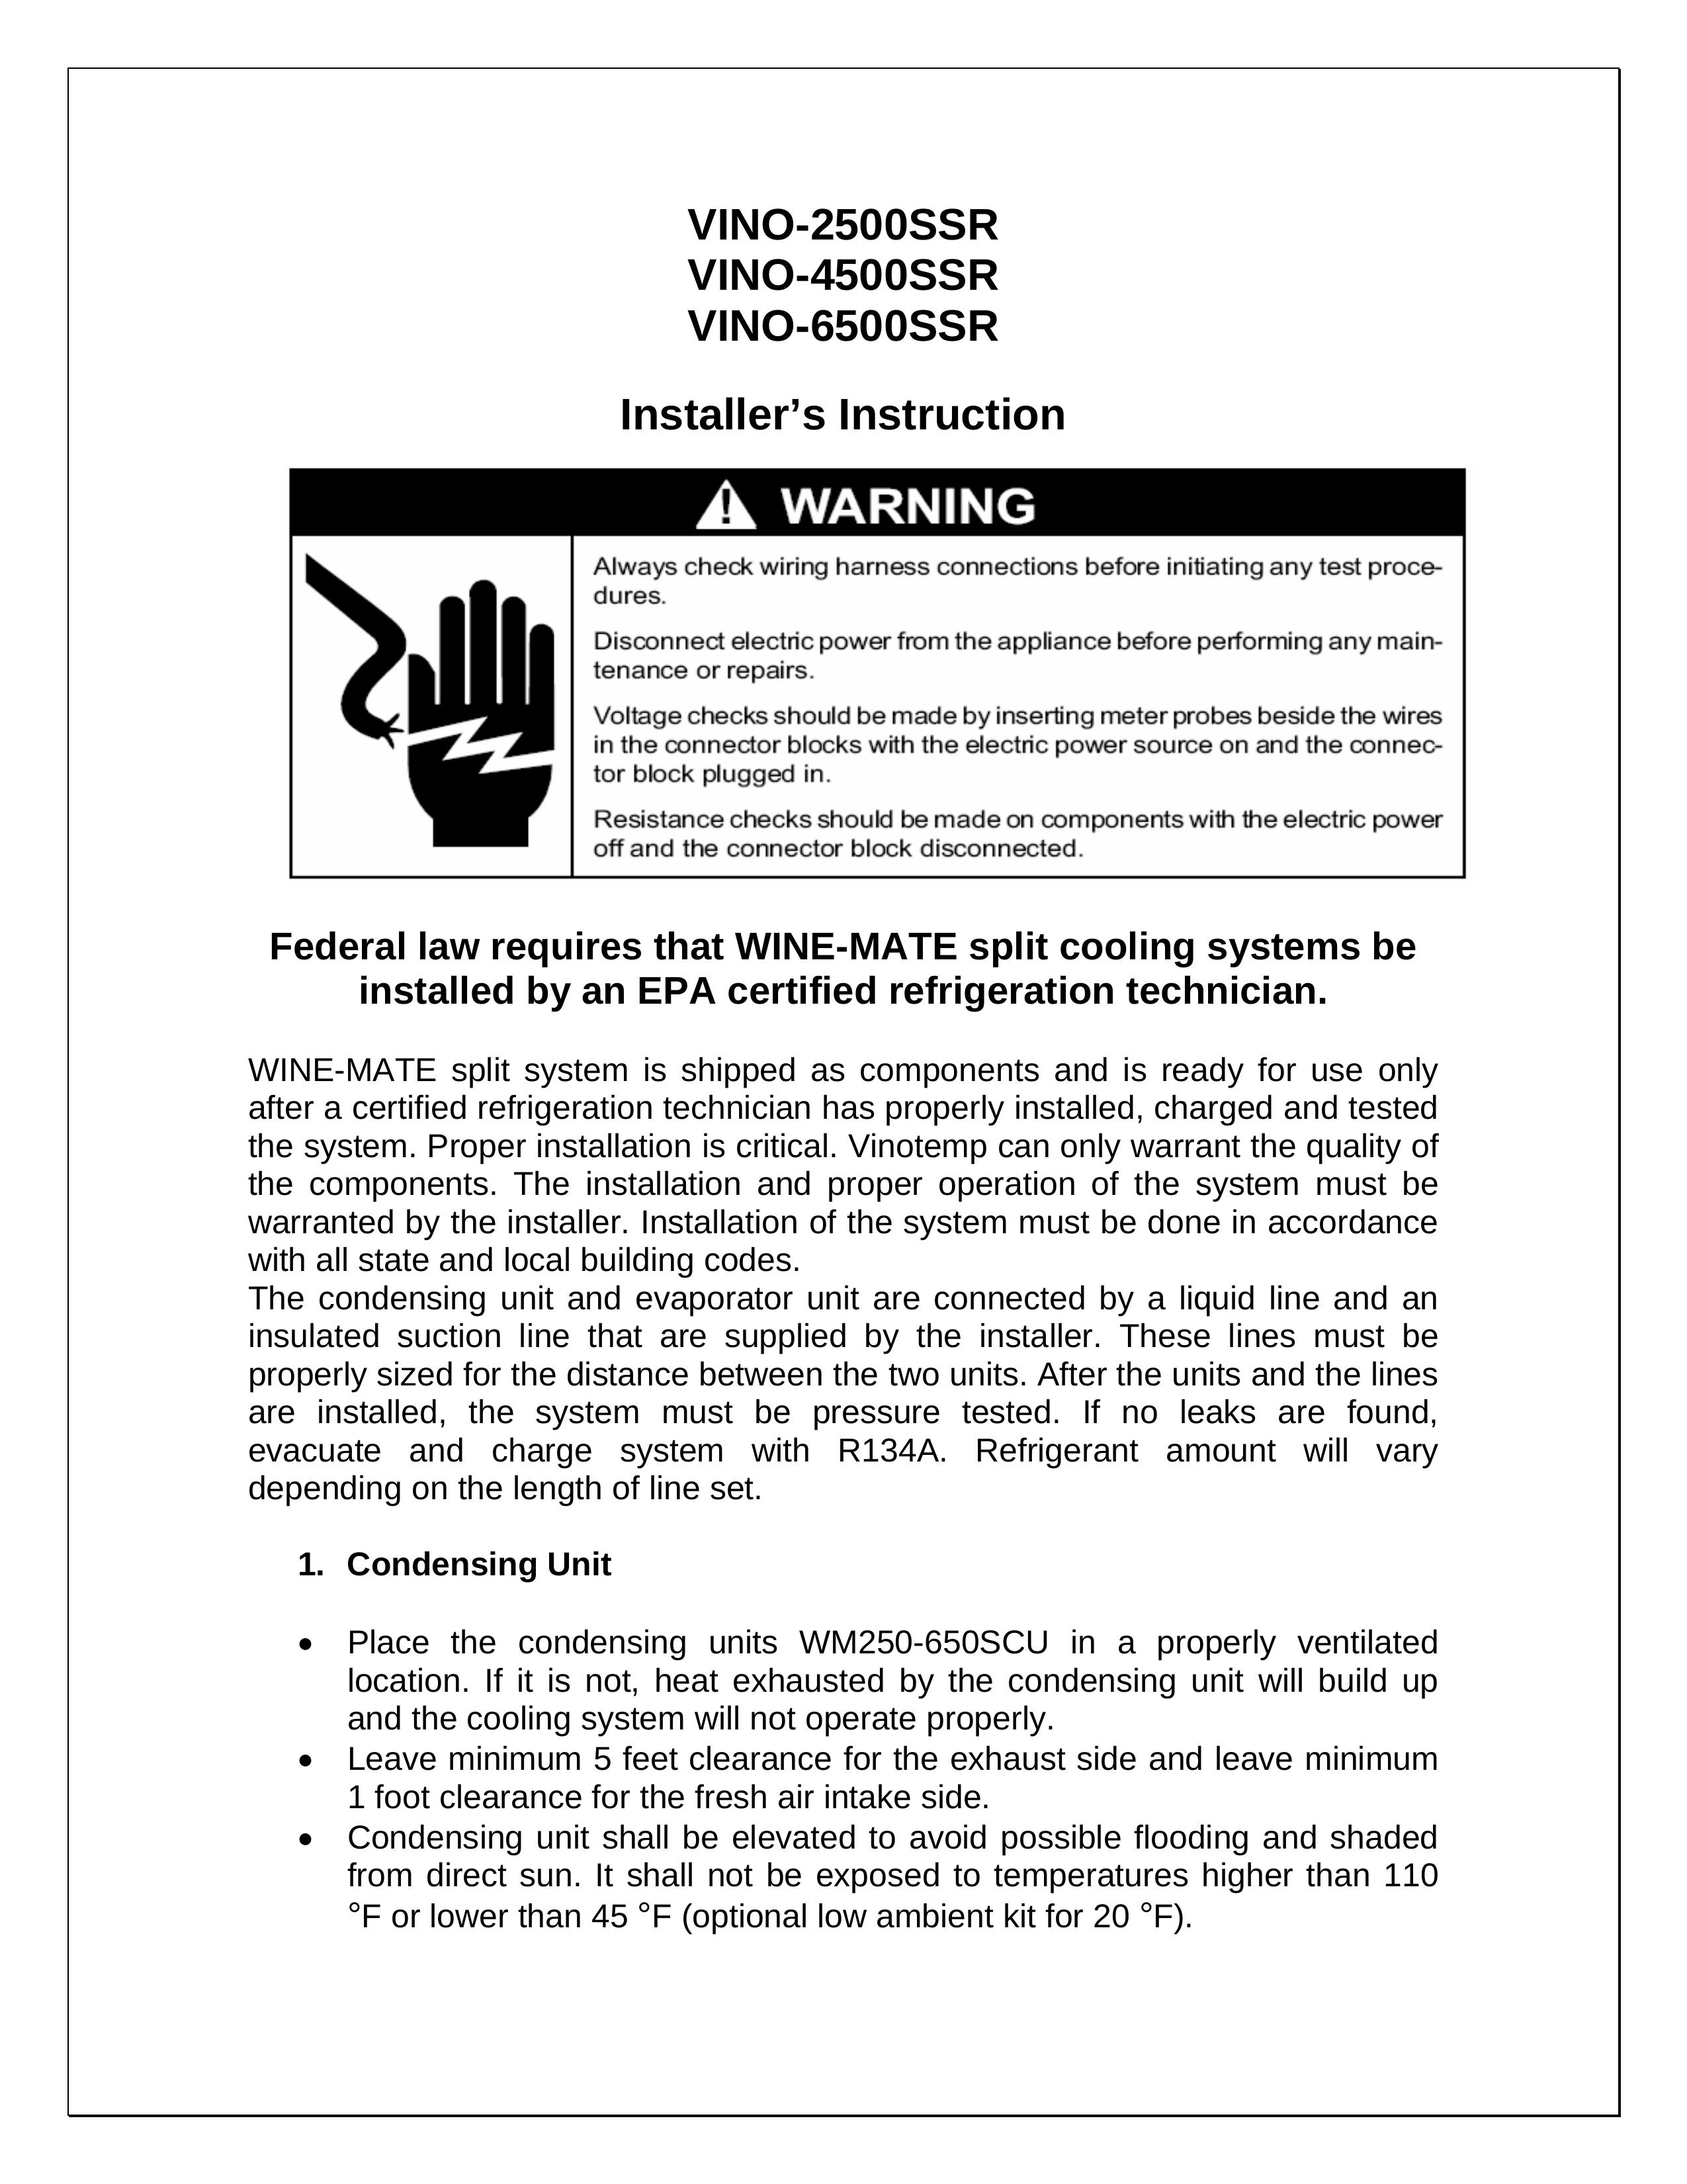 Vinotemp VINO-6500SSR Refrigerator User Manual